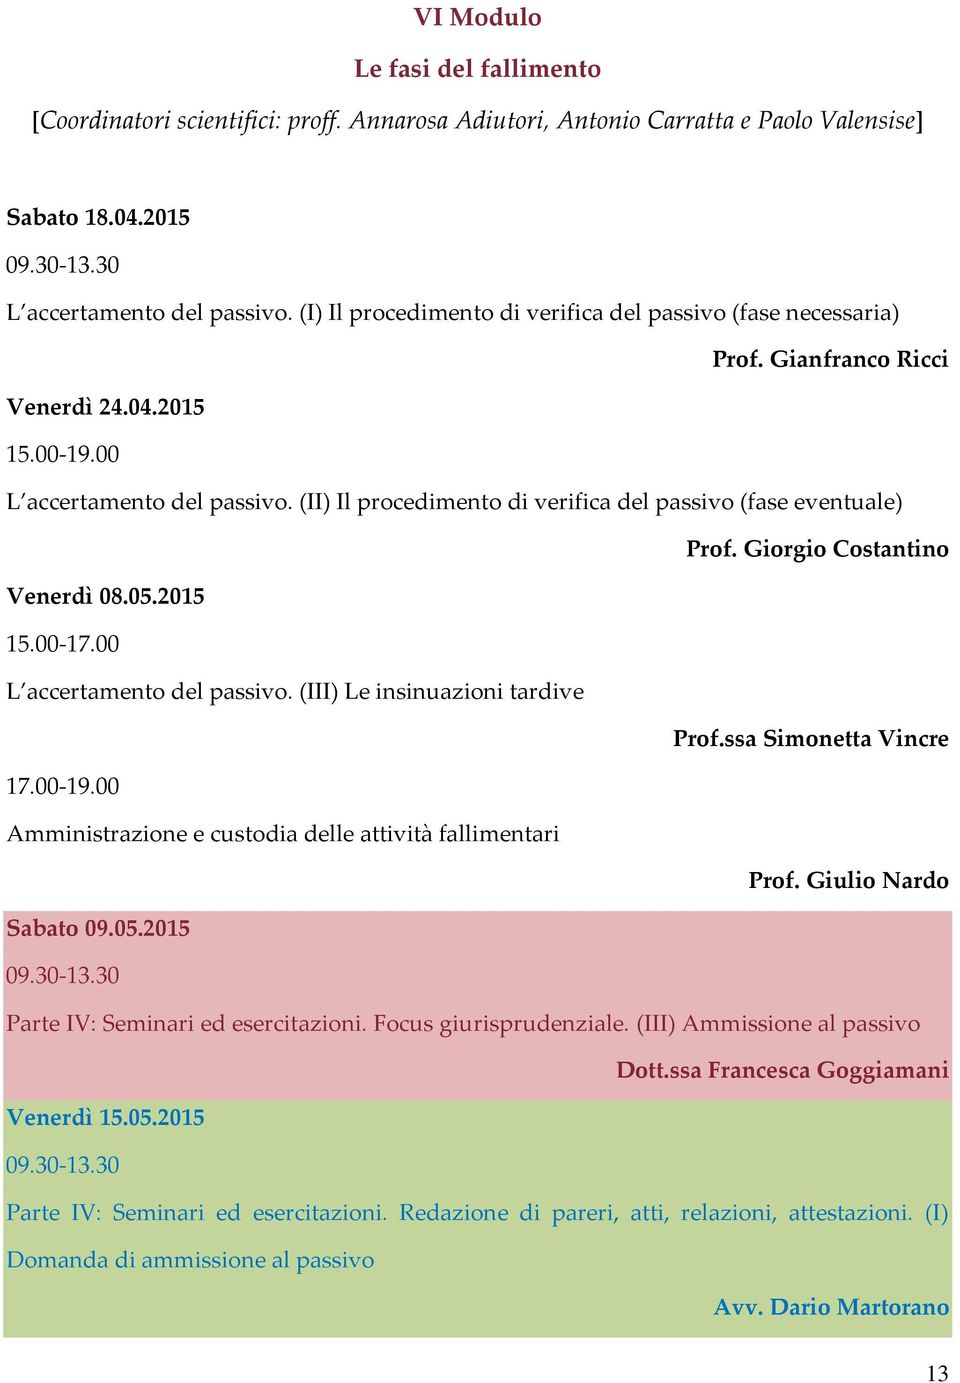 Giorgio Costantino Venerdì 08.05.2015 15.00-17.00 L accertamento del passivo. (III) Le insinuazioni tardive Prof.ssa Simonetta Vincre 17.00-19.